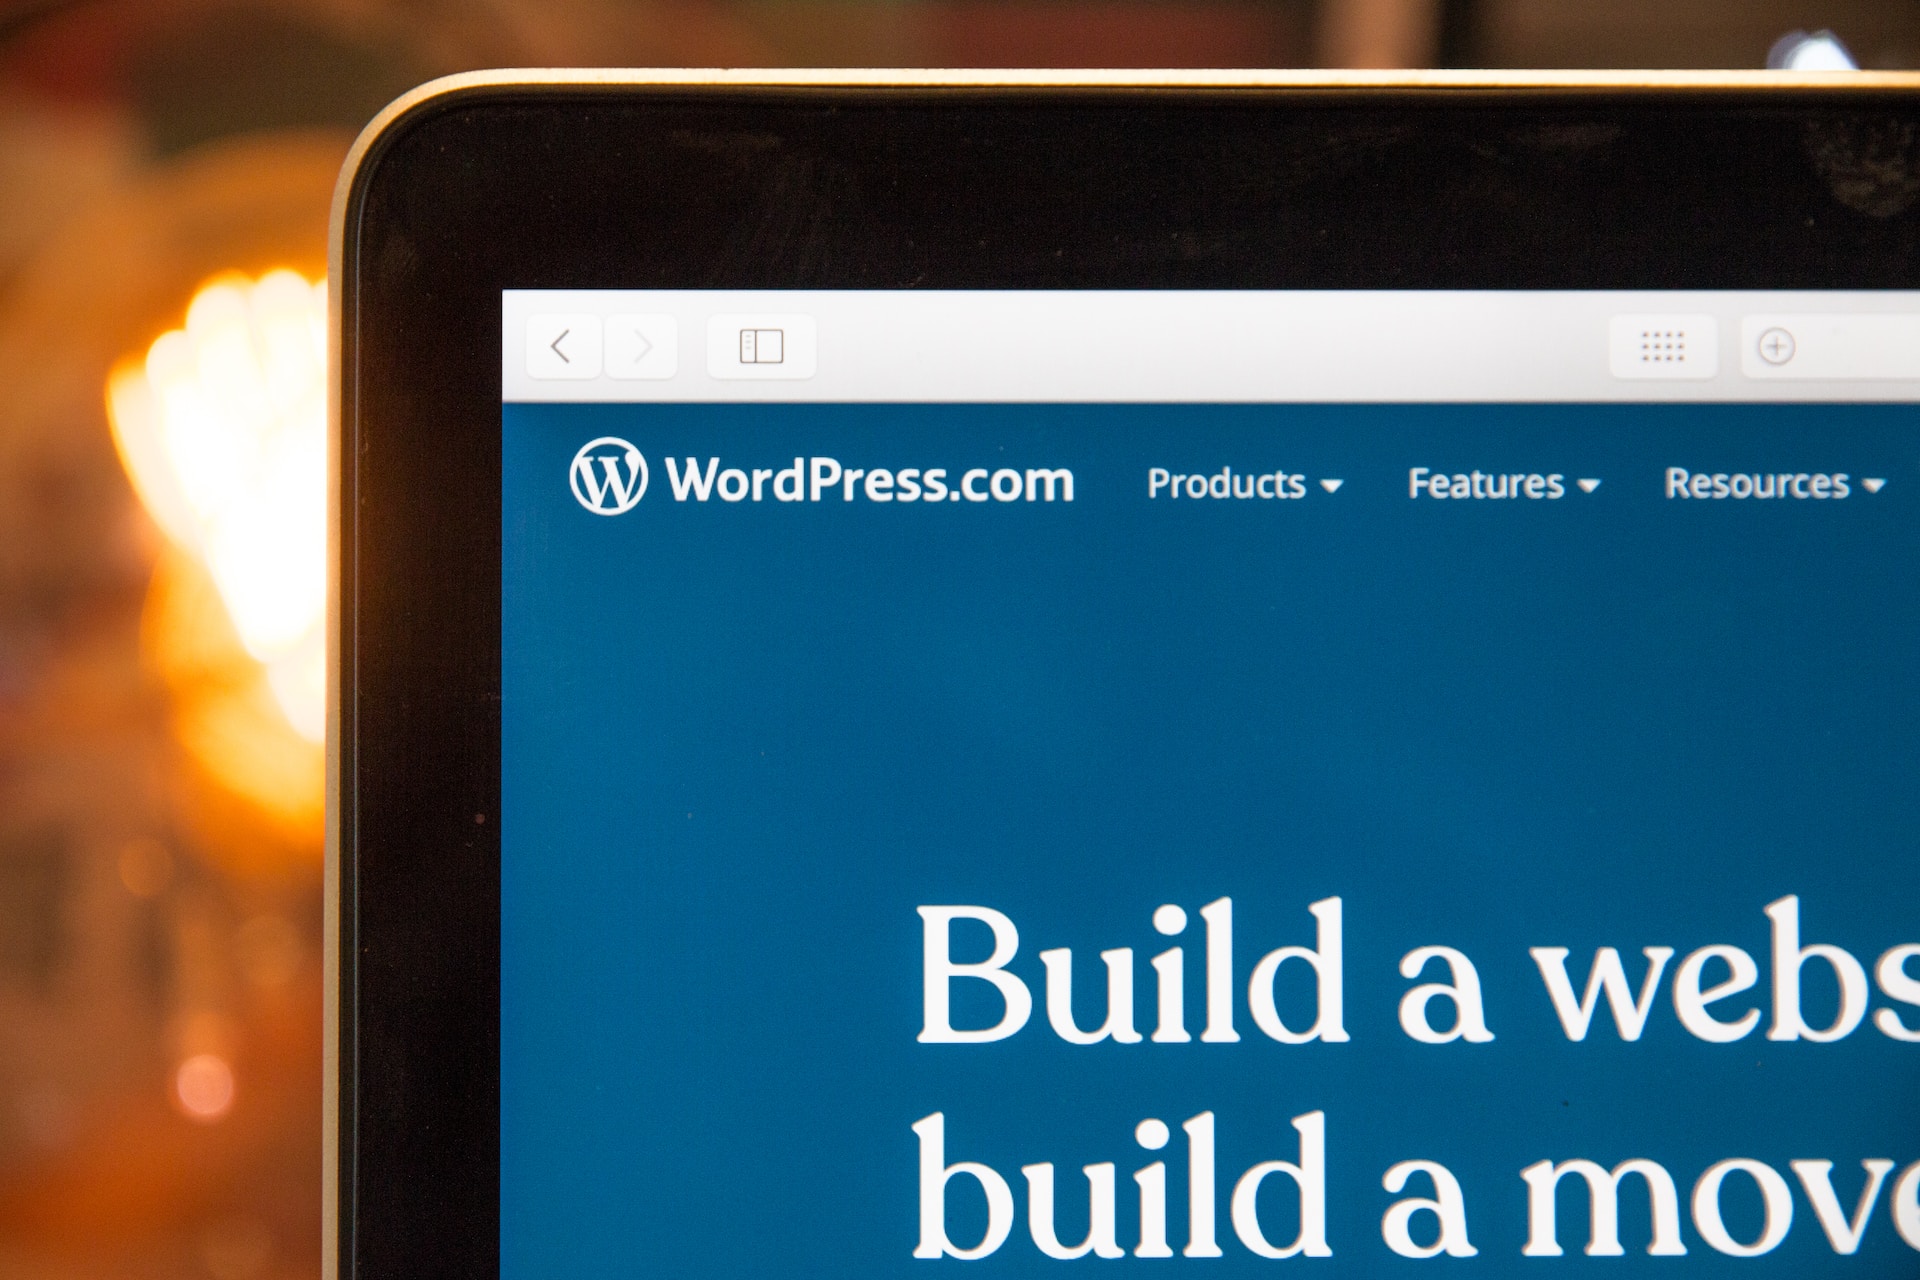 Ska du bygga en hemsida? Använd WordPress.org för en kostnadsfri hemsida